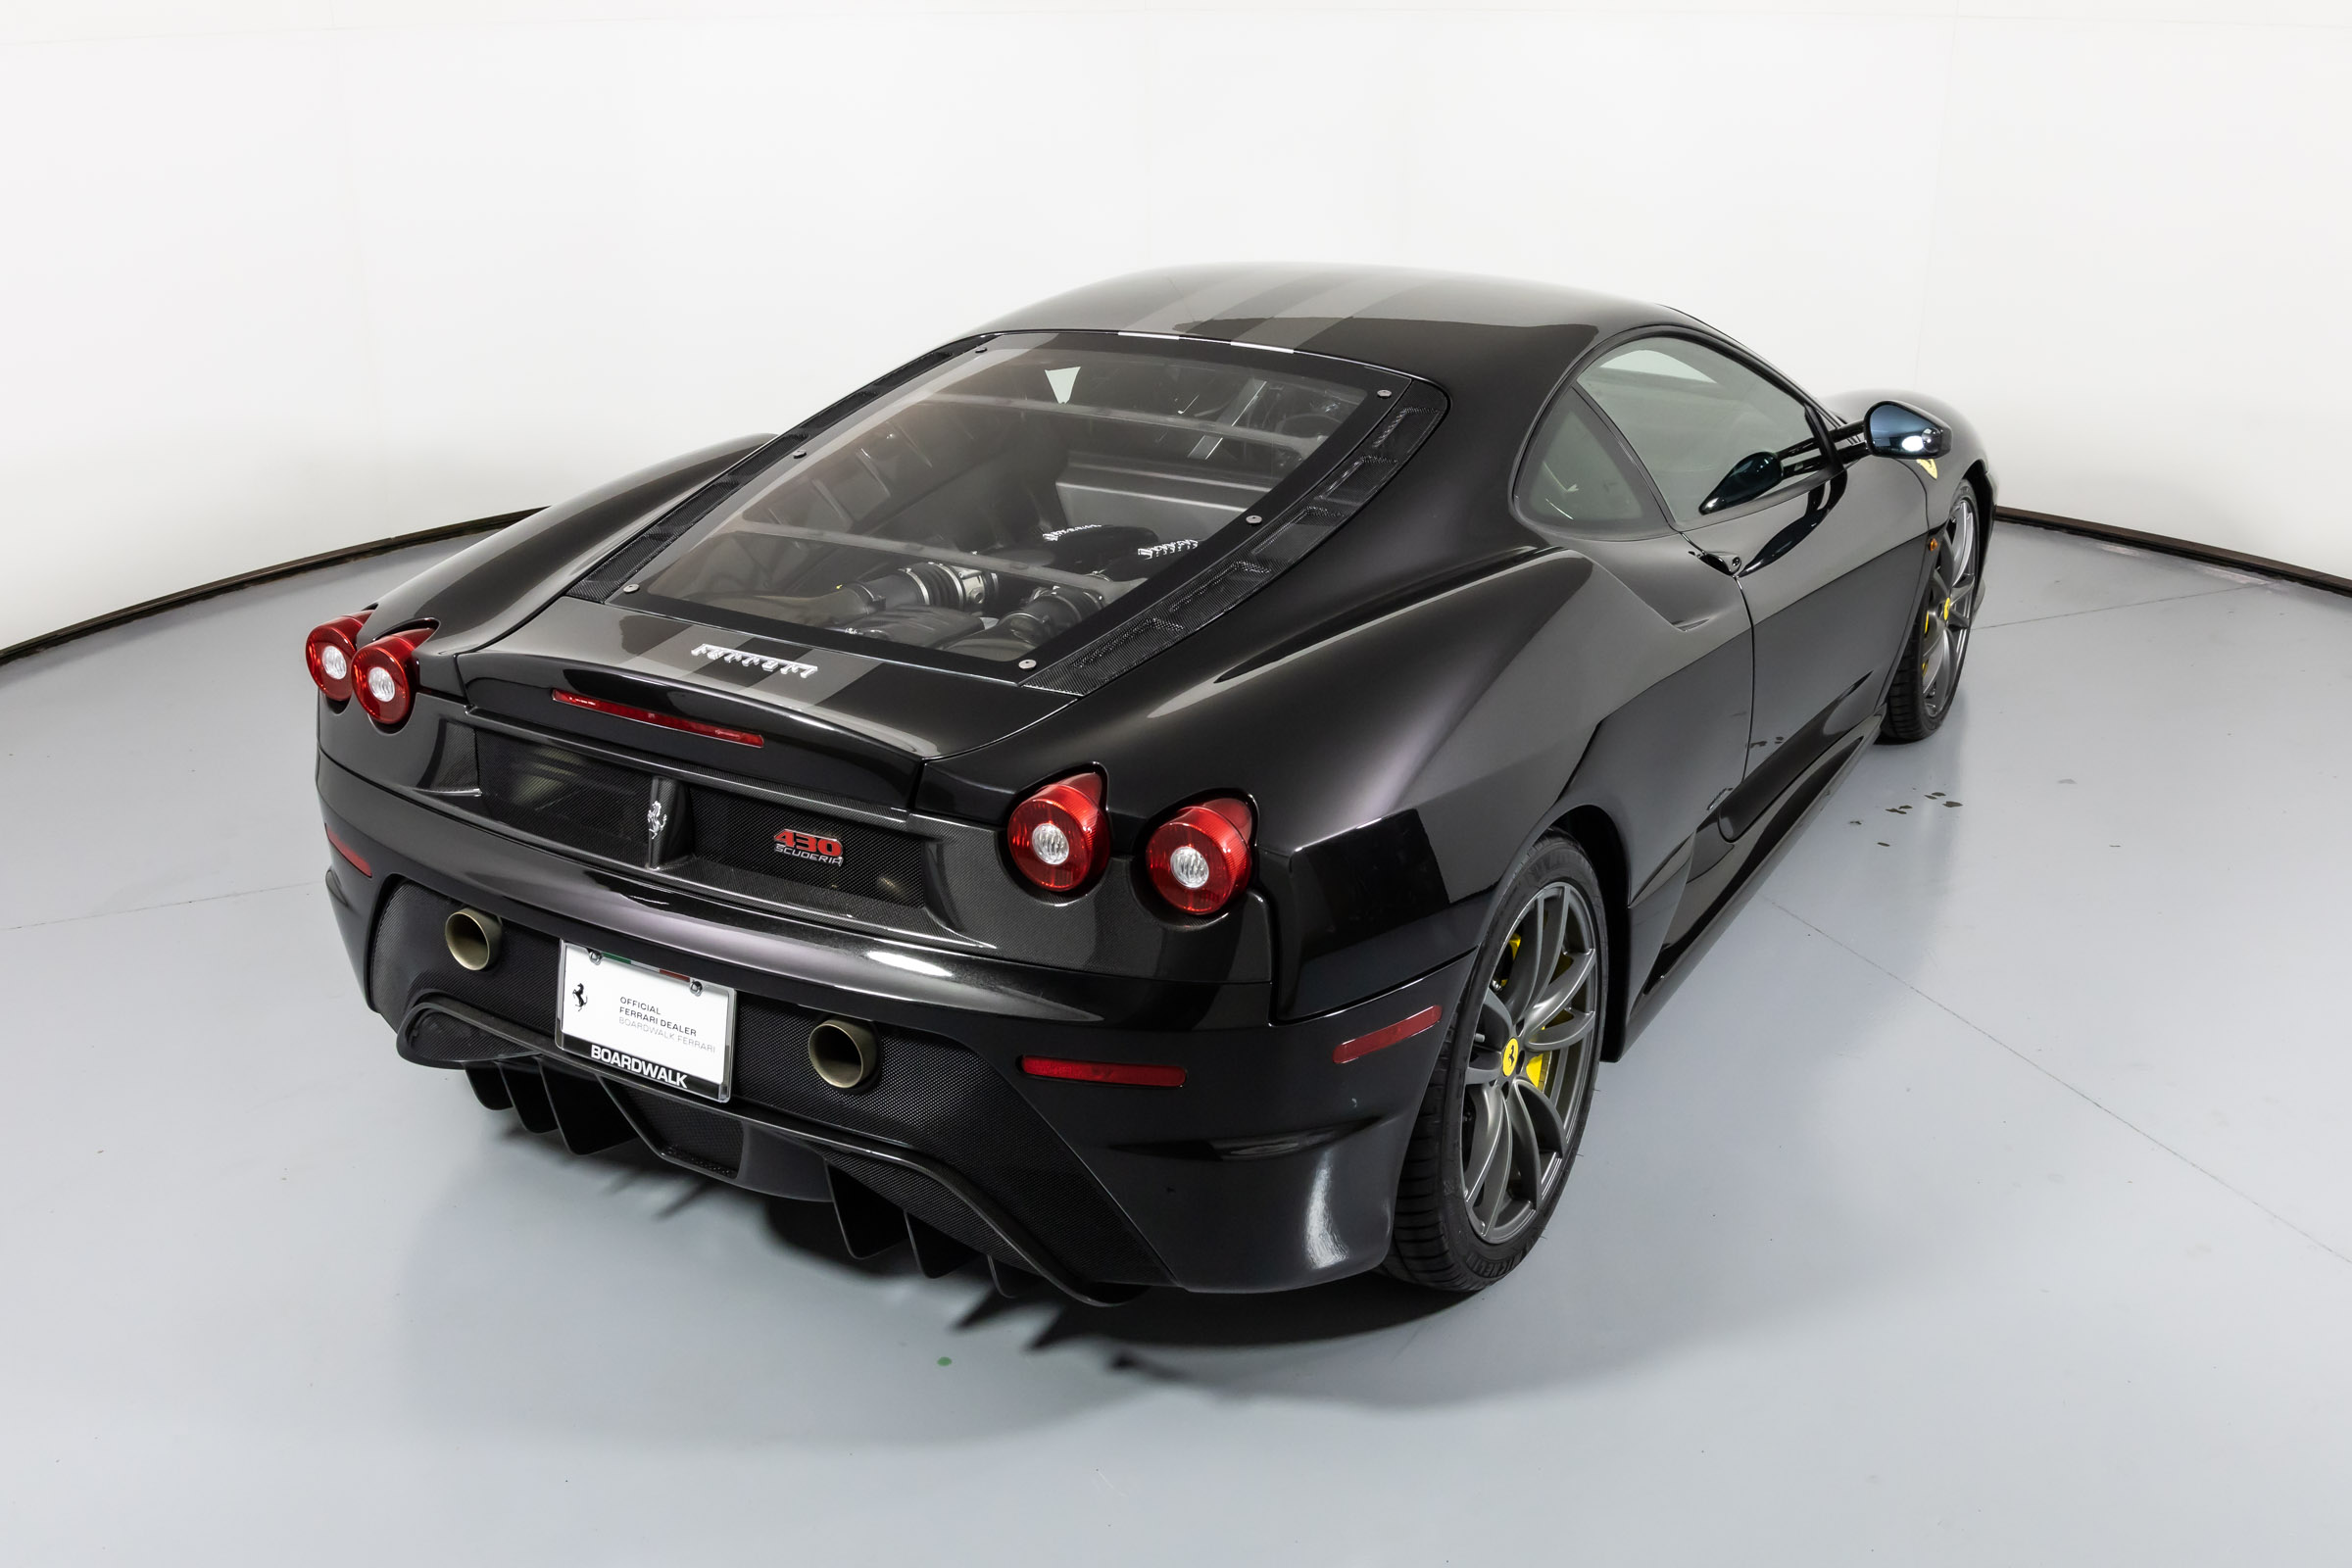 Used 2009 Ferrari F430 For Sale Plano, TX | VIN# ZFFKW64A890166049